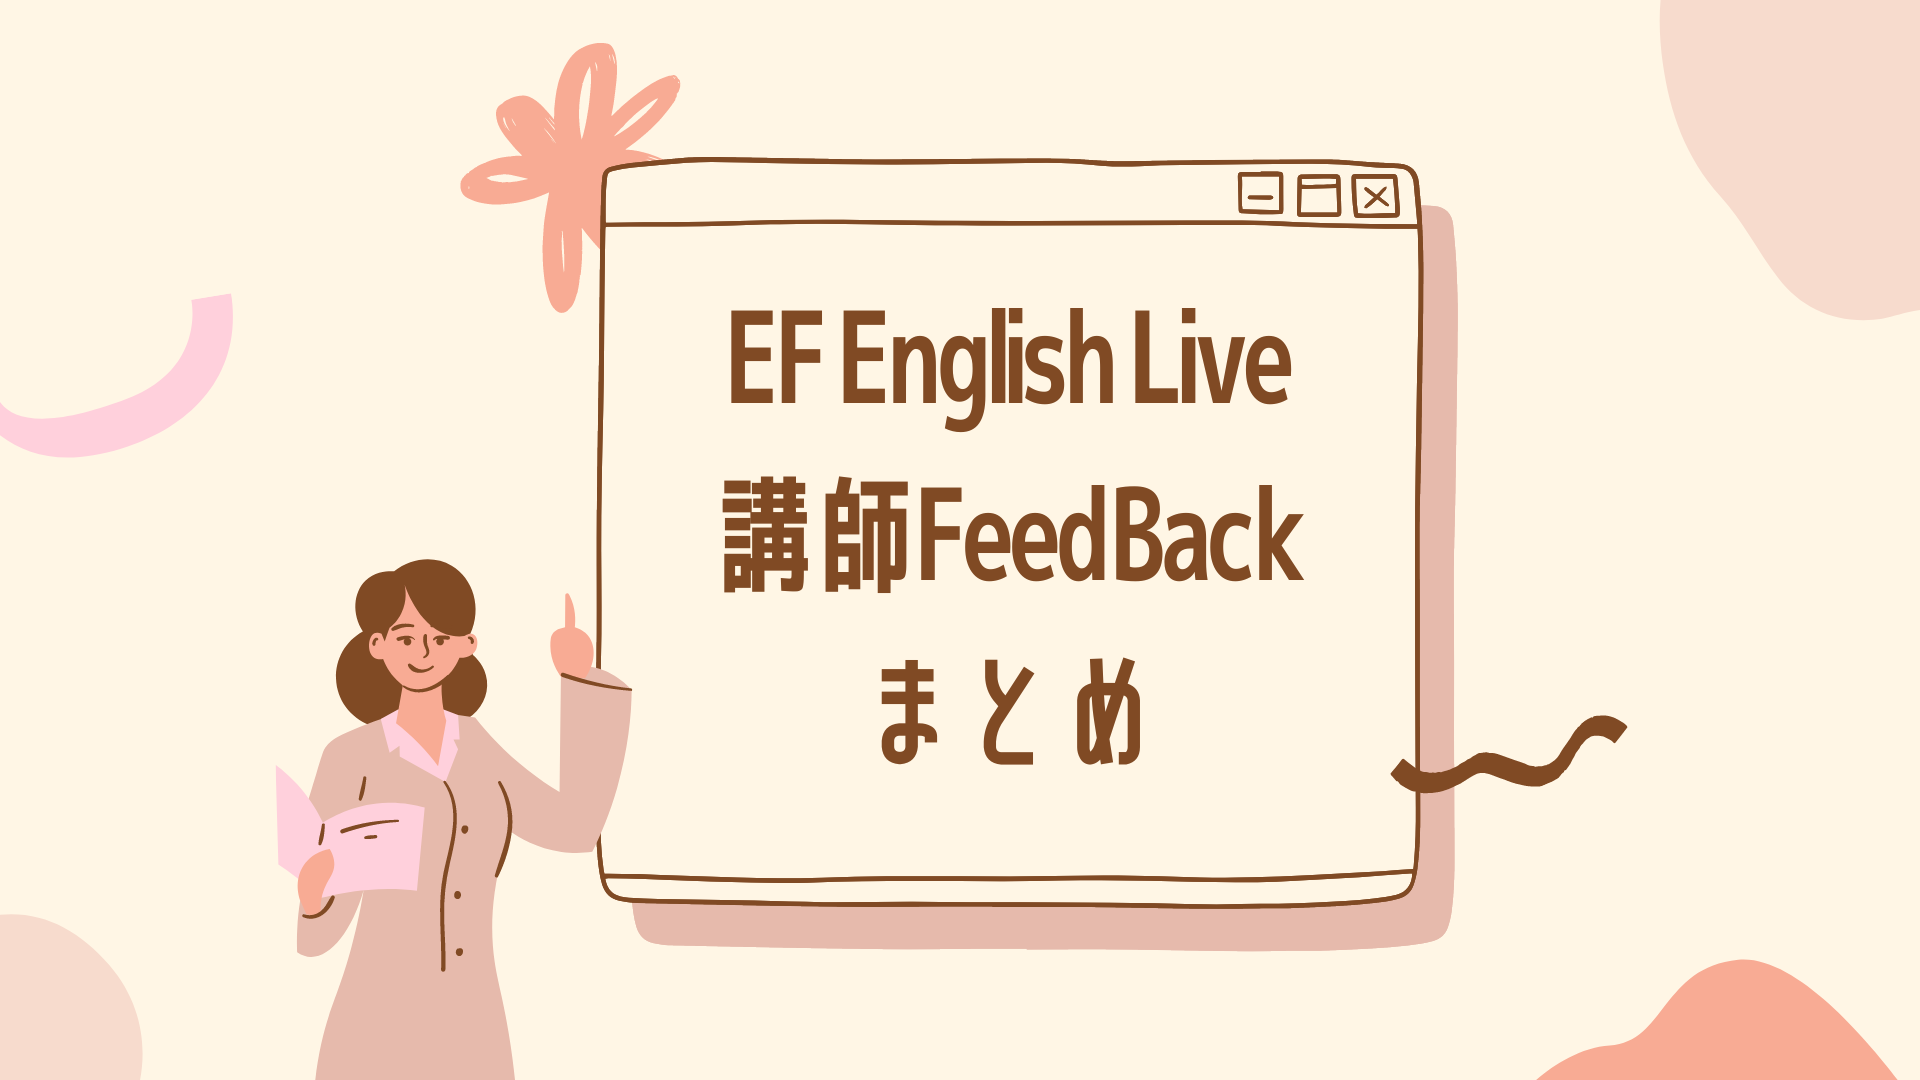 EF English Live 講師FeedBack まとめ